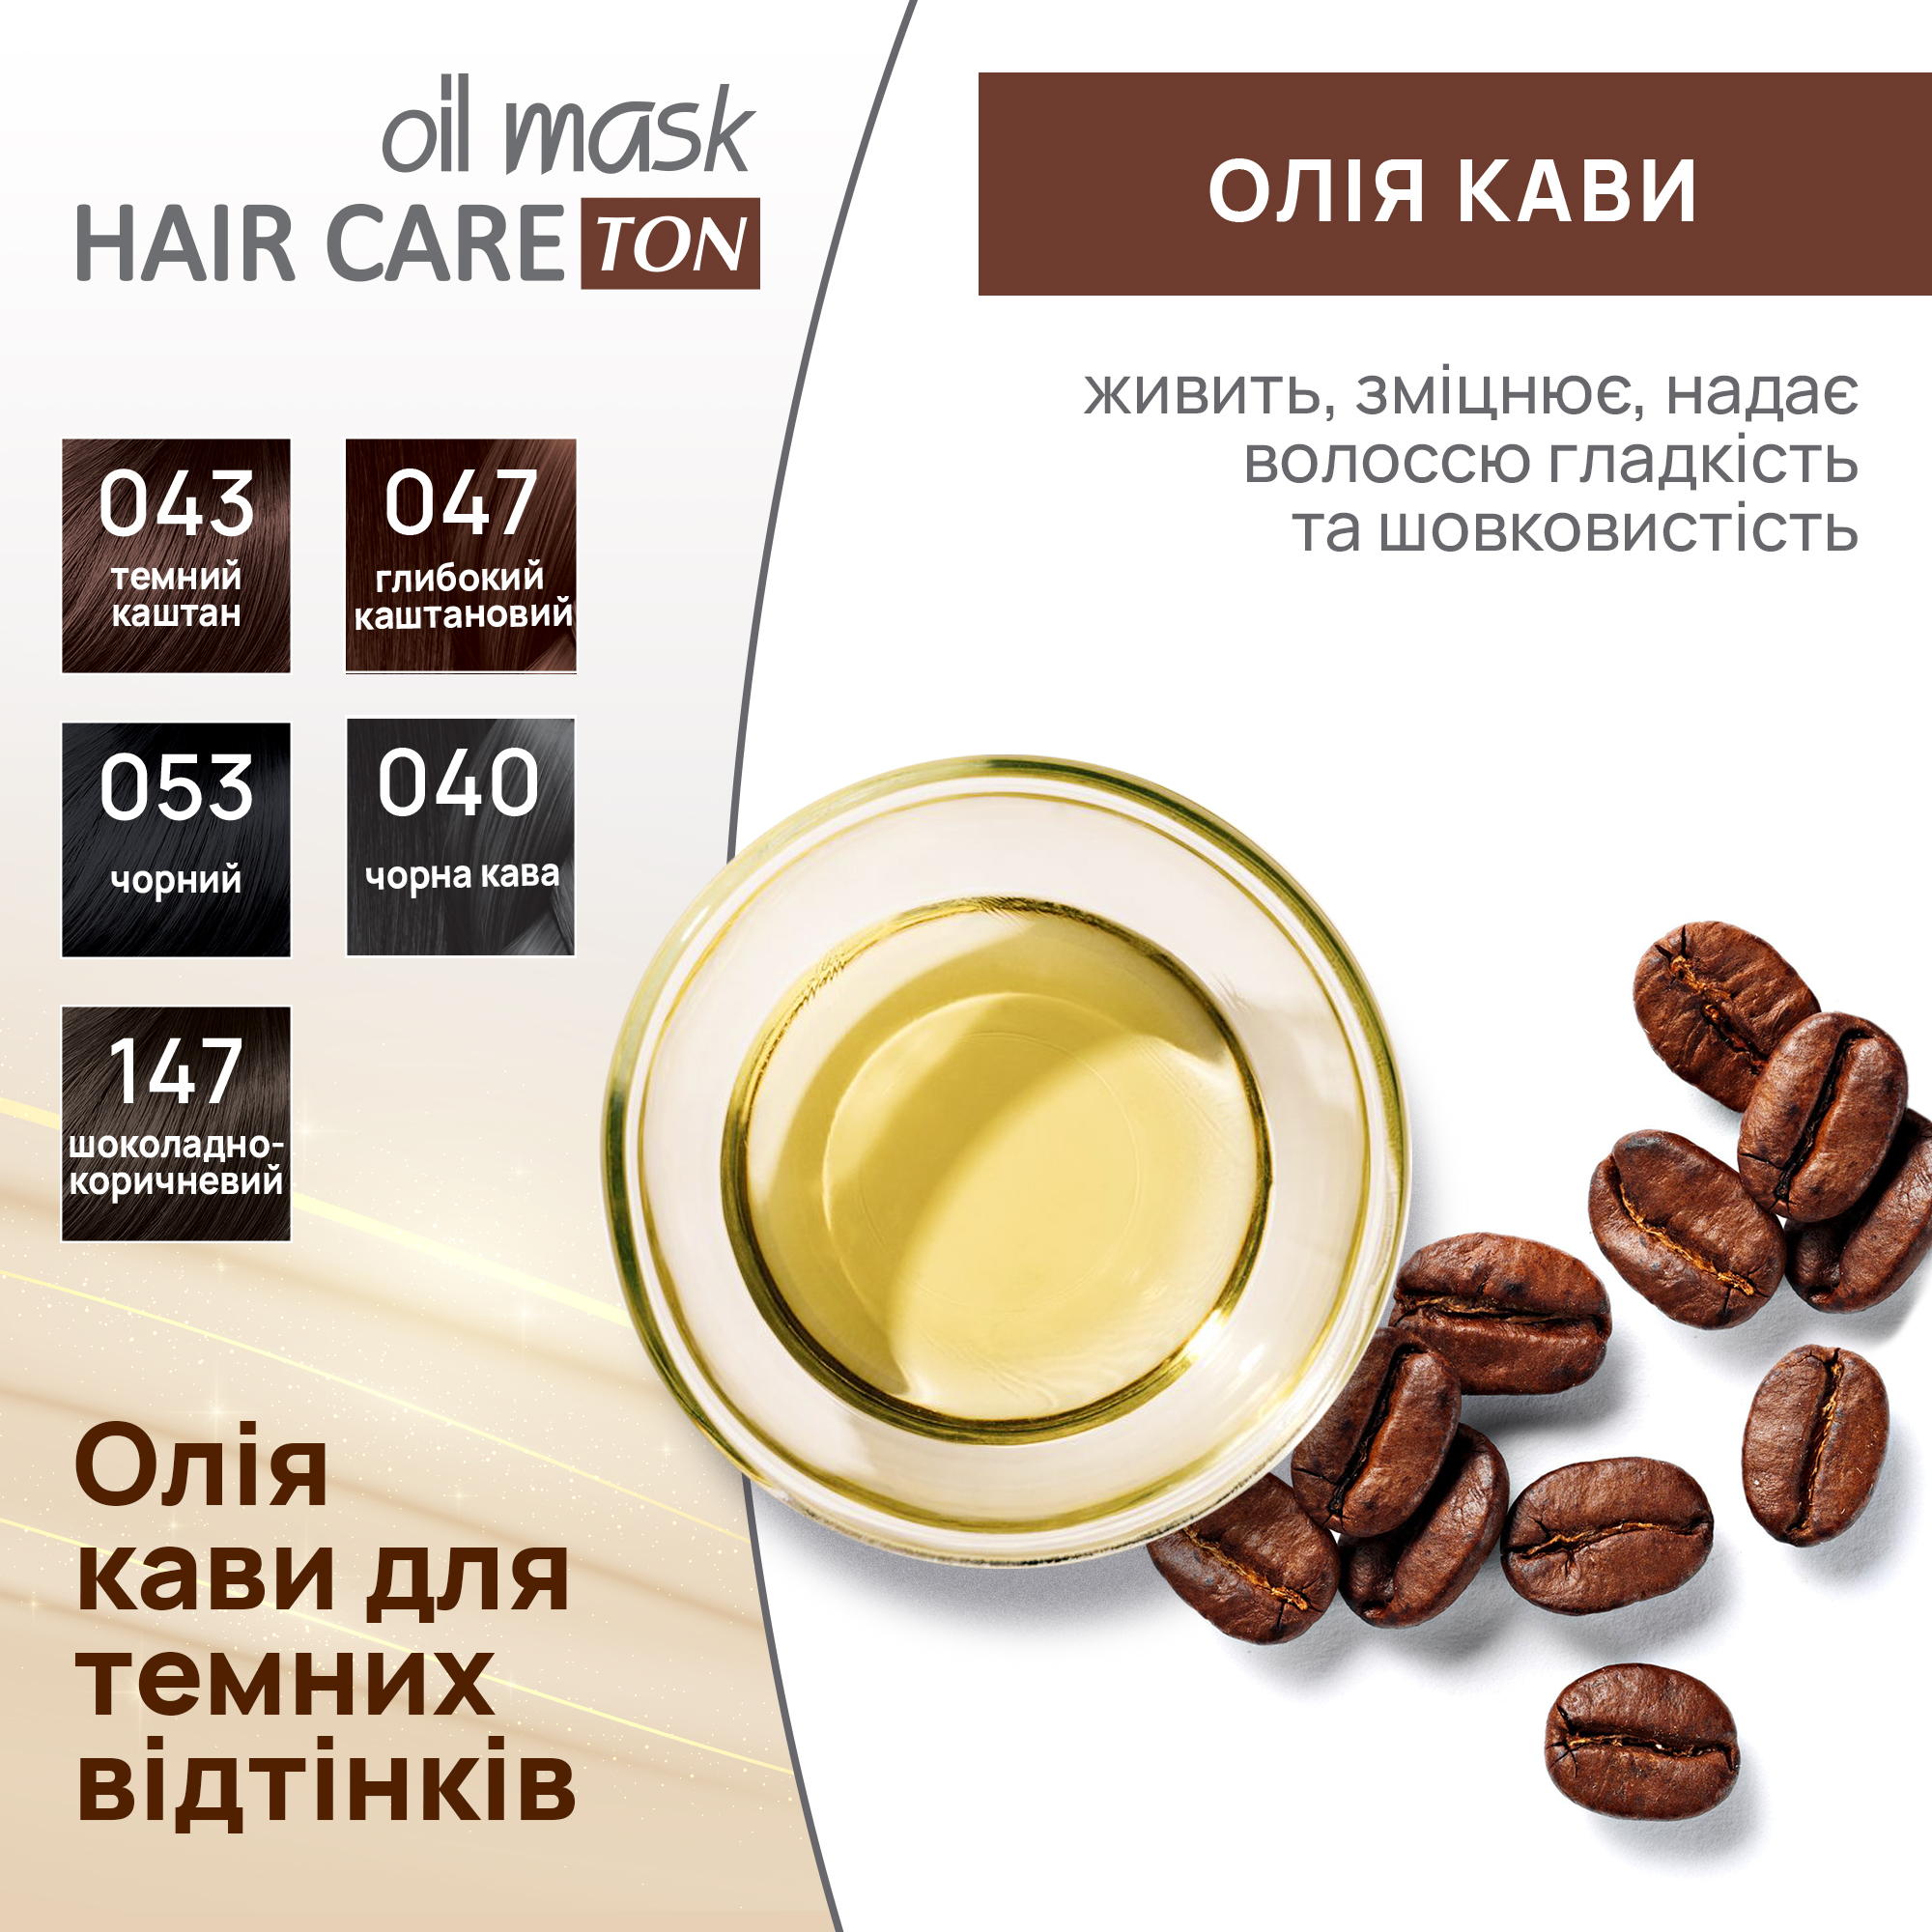 Тонуюча маска для волосся Acme Color Hair Care Ton oil mask, відтінок 040, чорна кава, 30 мл - фото 6